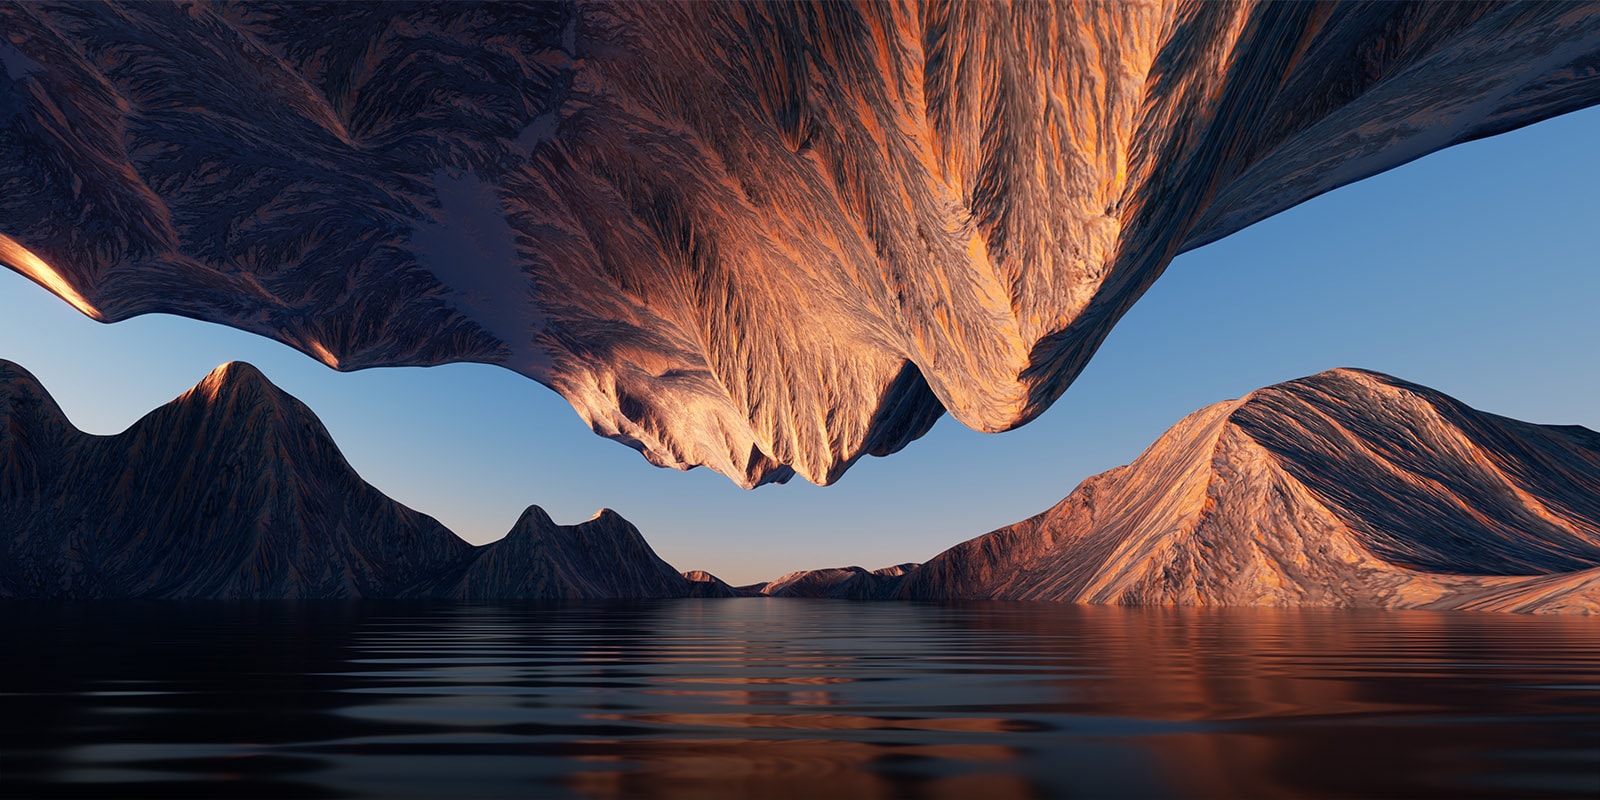 La imagen de la naturaleza con la montaña rocosa enfrentada desde arriba y desde abajo muestra el contraste y los detalles.